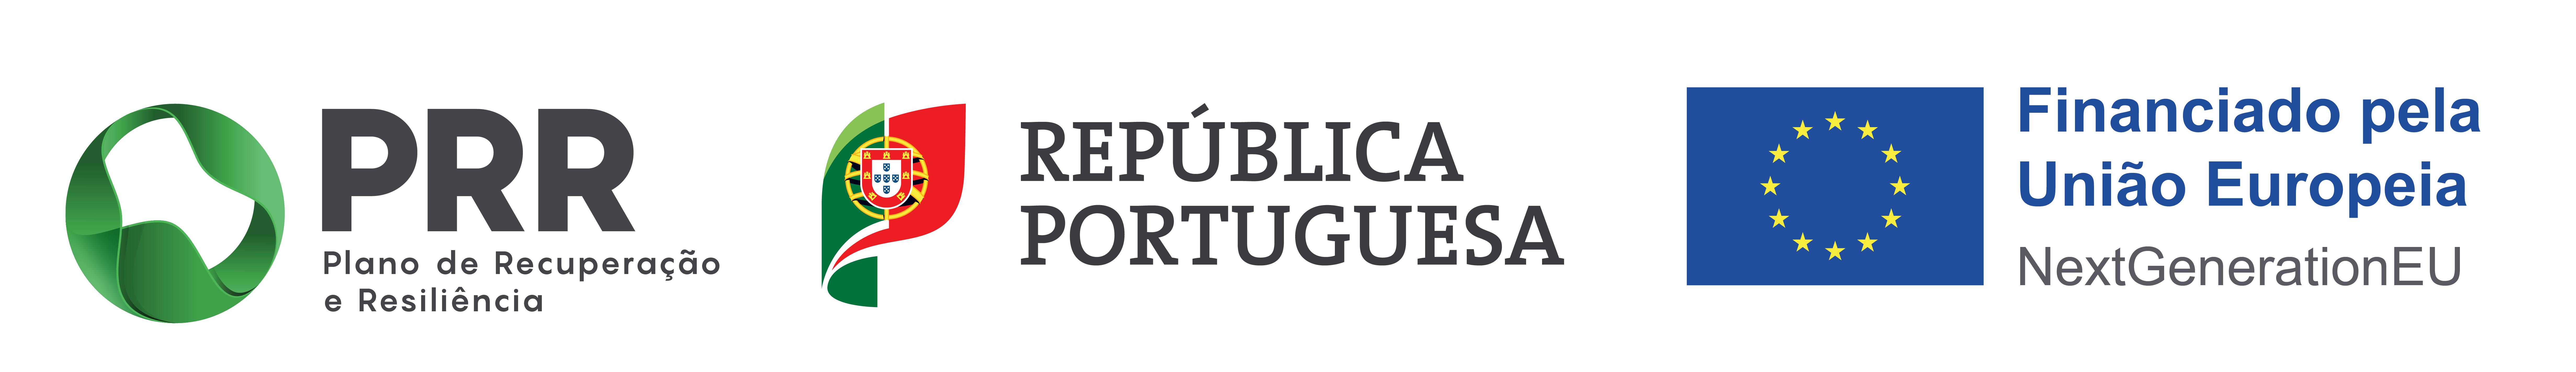 Barra de financiamento PRR, República Portuguesa e União Europeia